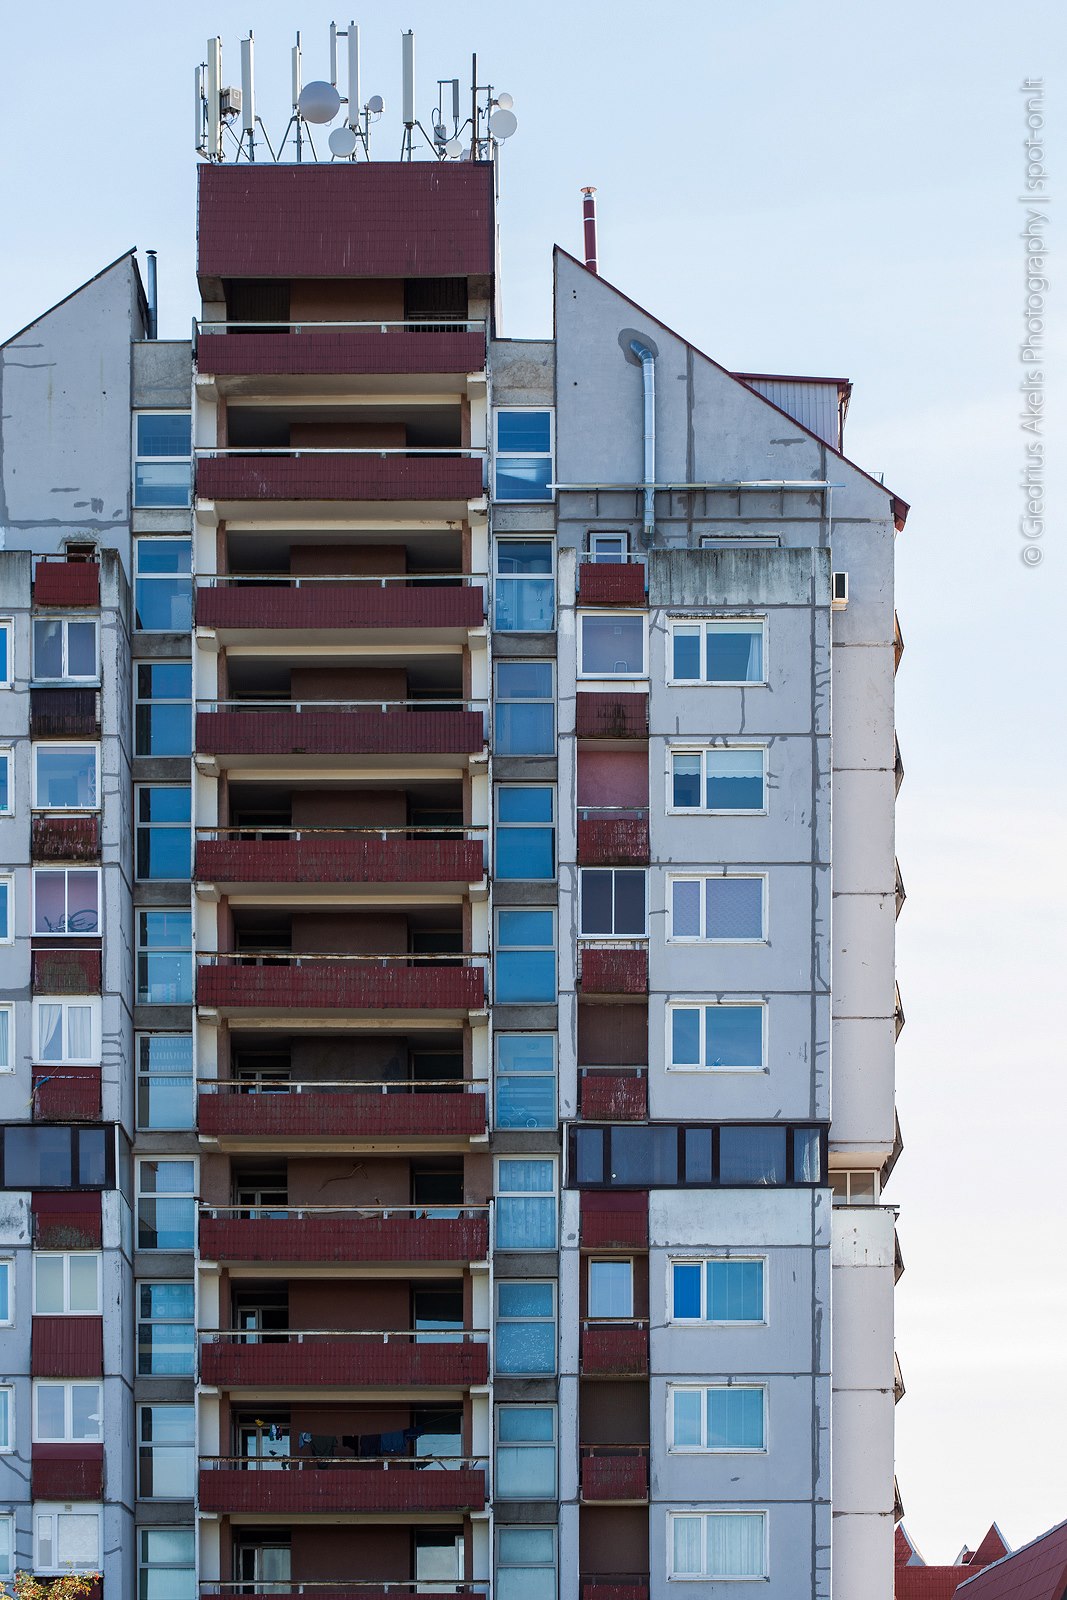 Architektūros [ekskursijų] fondas. Palanga. Sovietmečio modernizmas. Nuotraukos aut. – Giedrius Akelis Photography | spot-on.lt